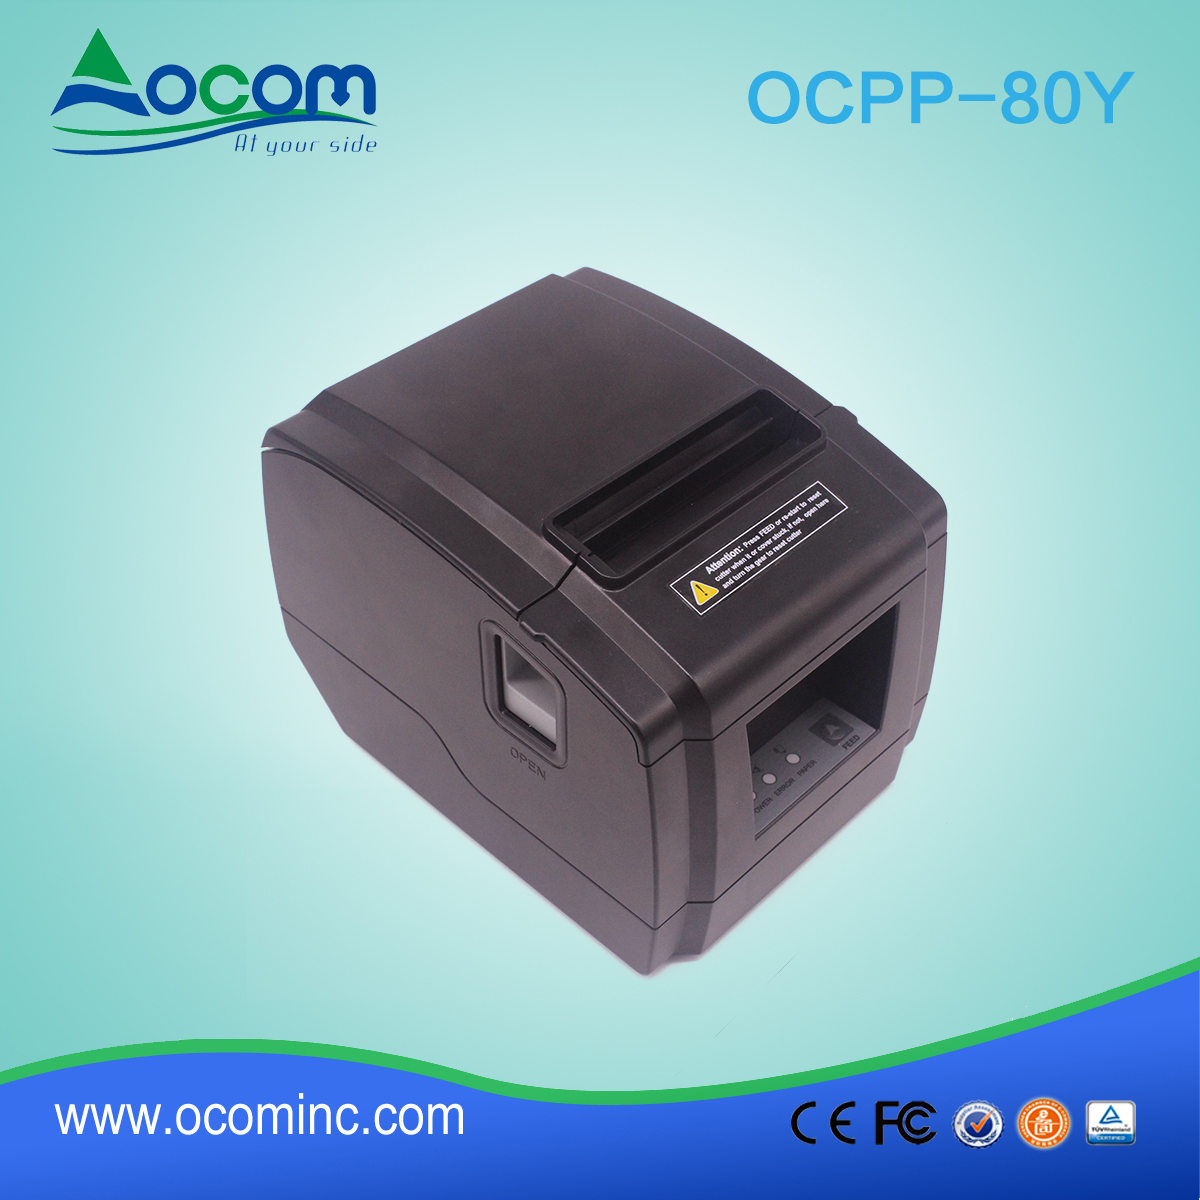 OCPP-80Y - недорогой 3-дюймовый принтер с автоматической печатью POS-принтеров